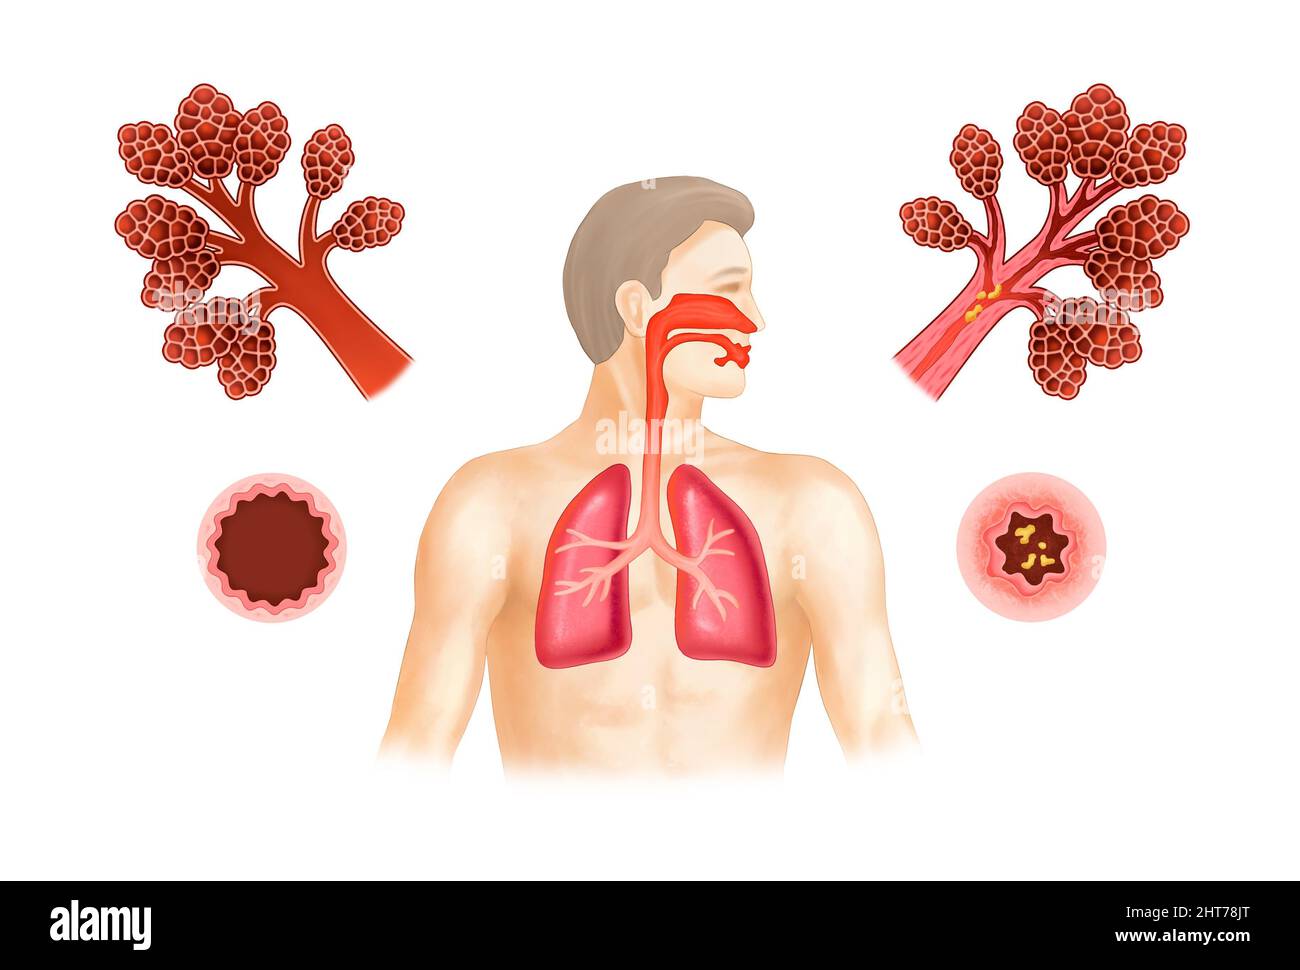 Une illustration réaliste de l'asthme et de l'anatomie humaine Banque D'Images